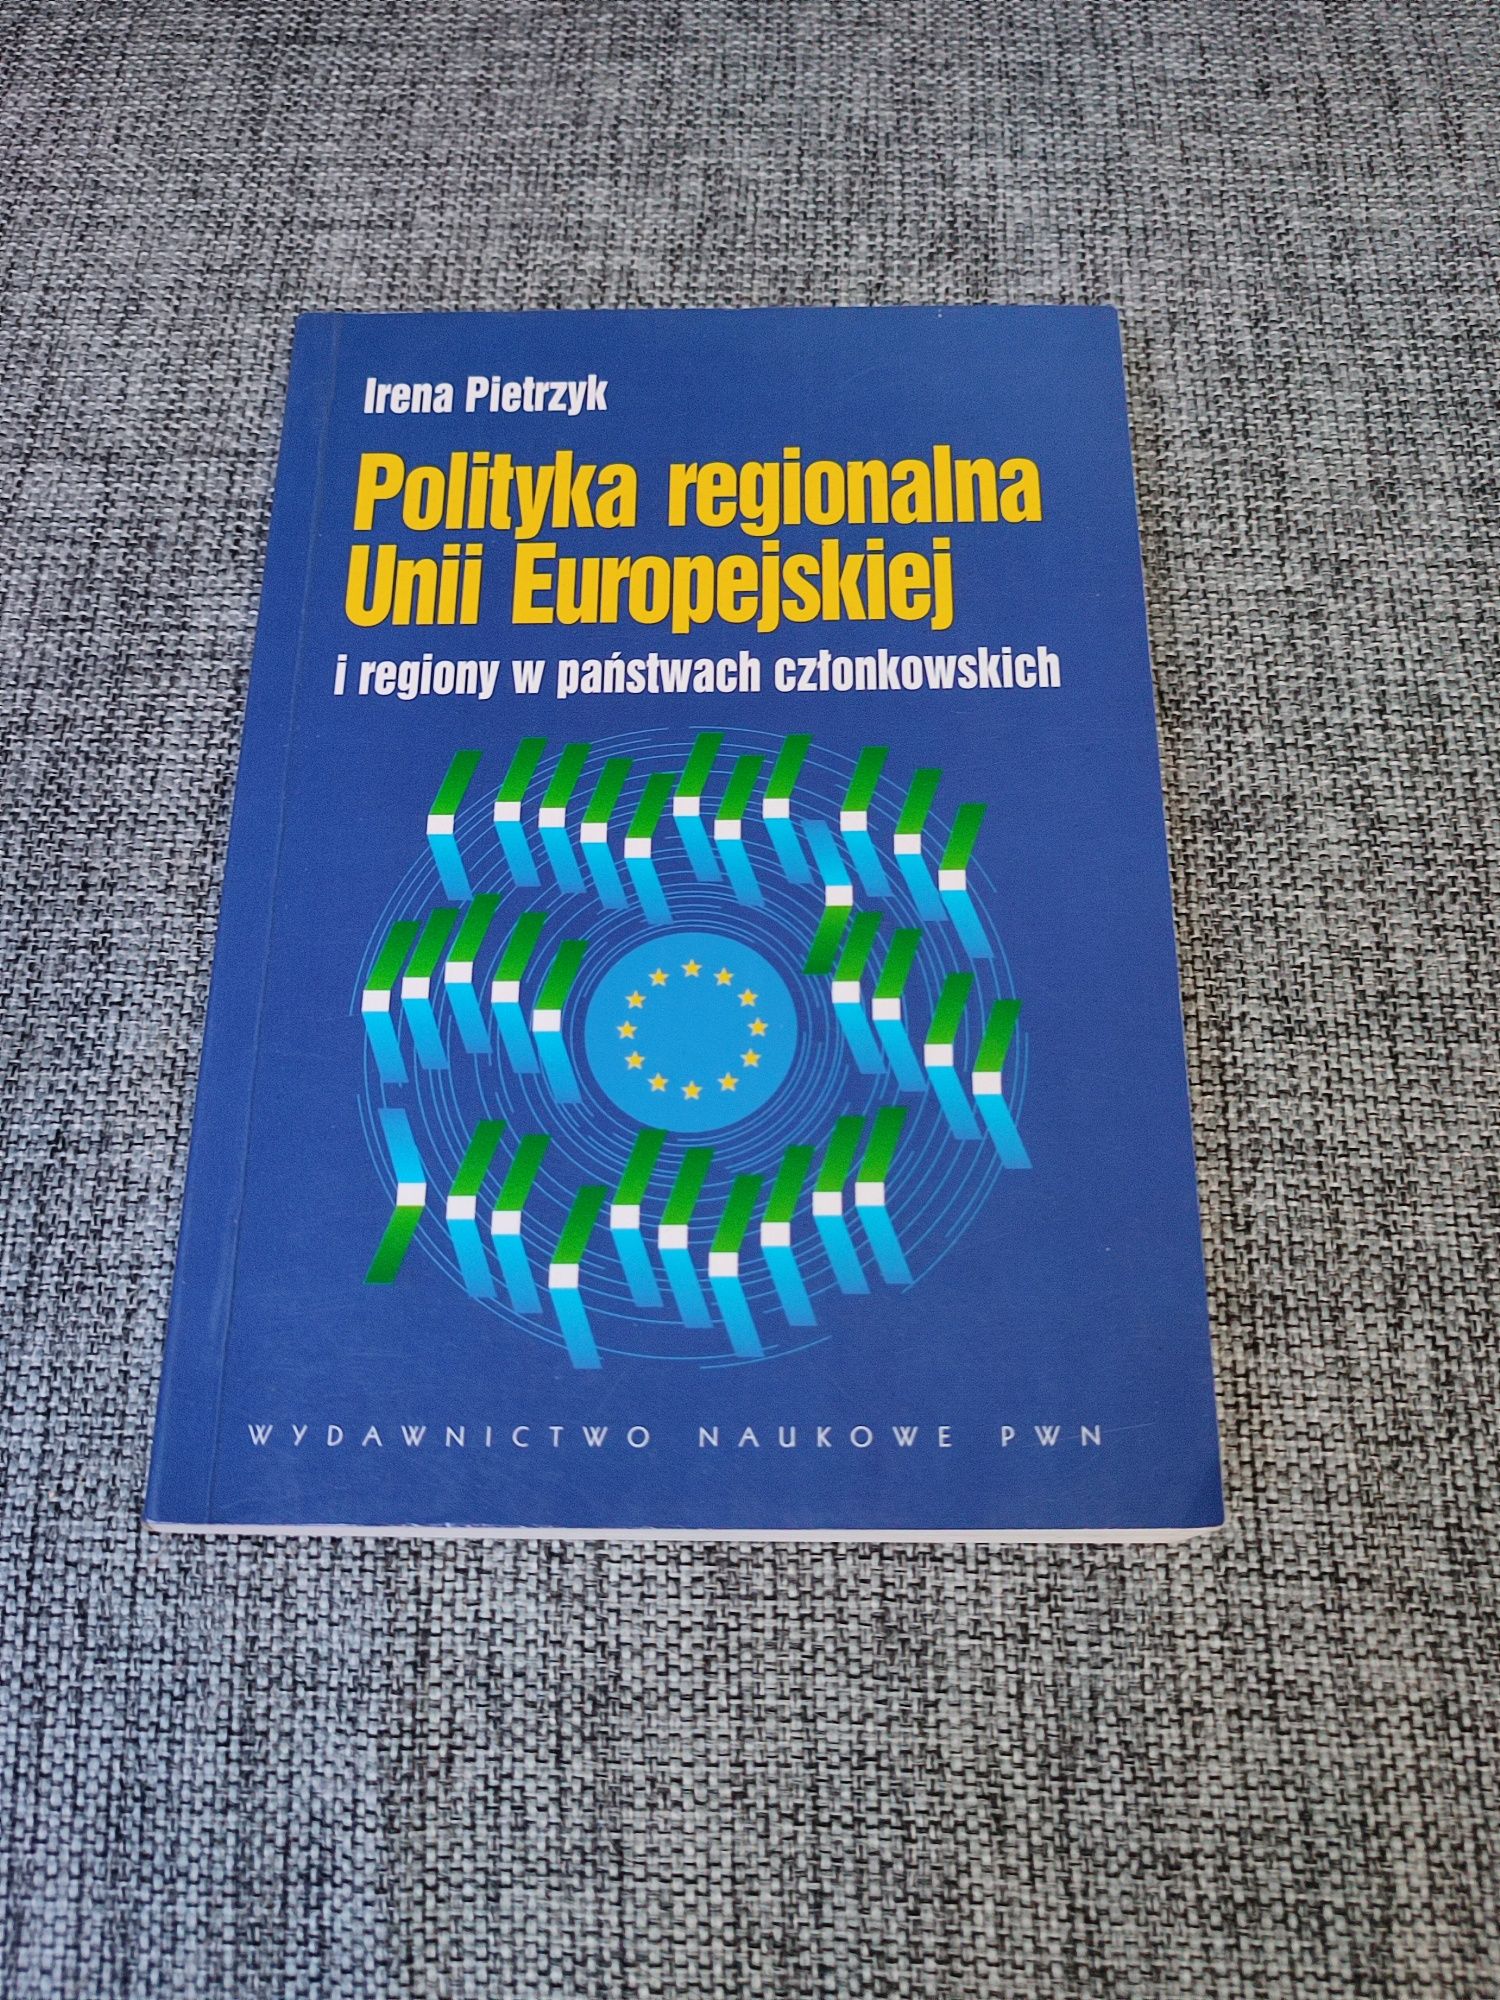 Polityka regionalna Unii Europejskiej - Irena Pietrzyk